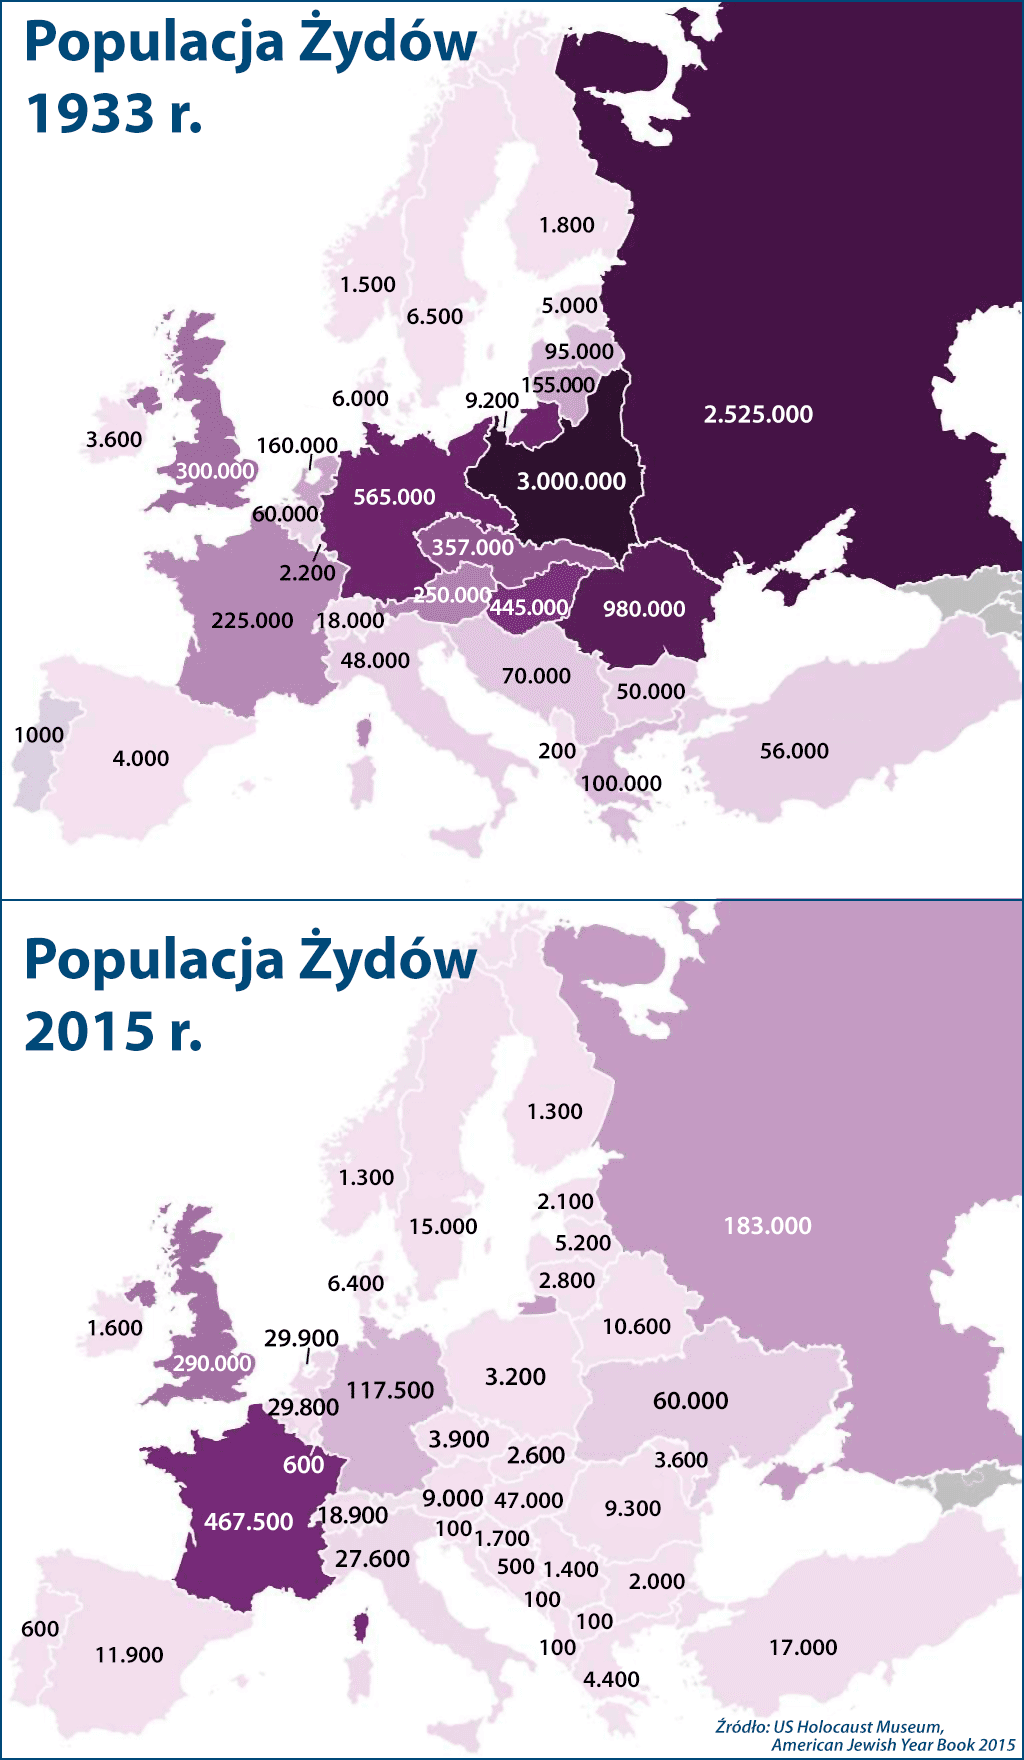 Populacja Żydów w Europie